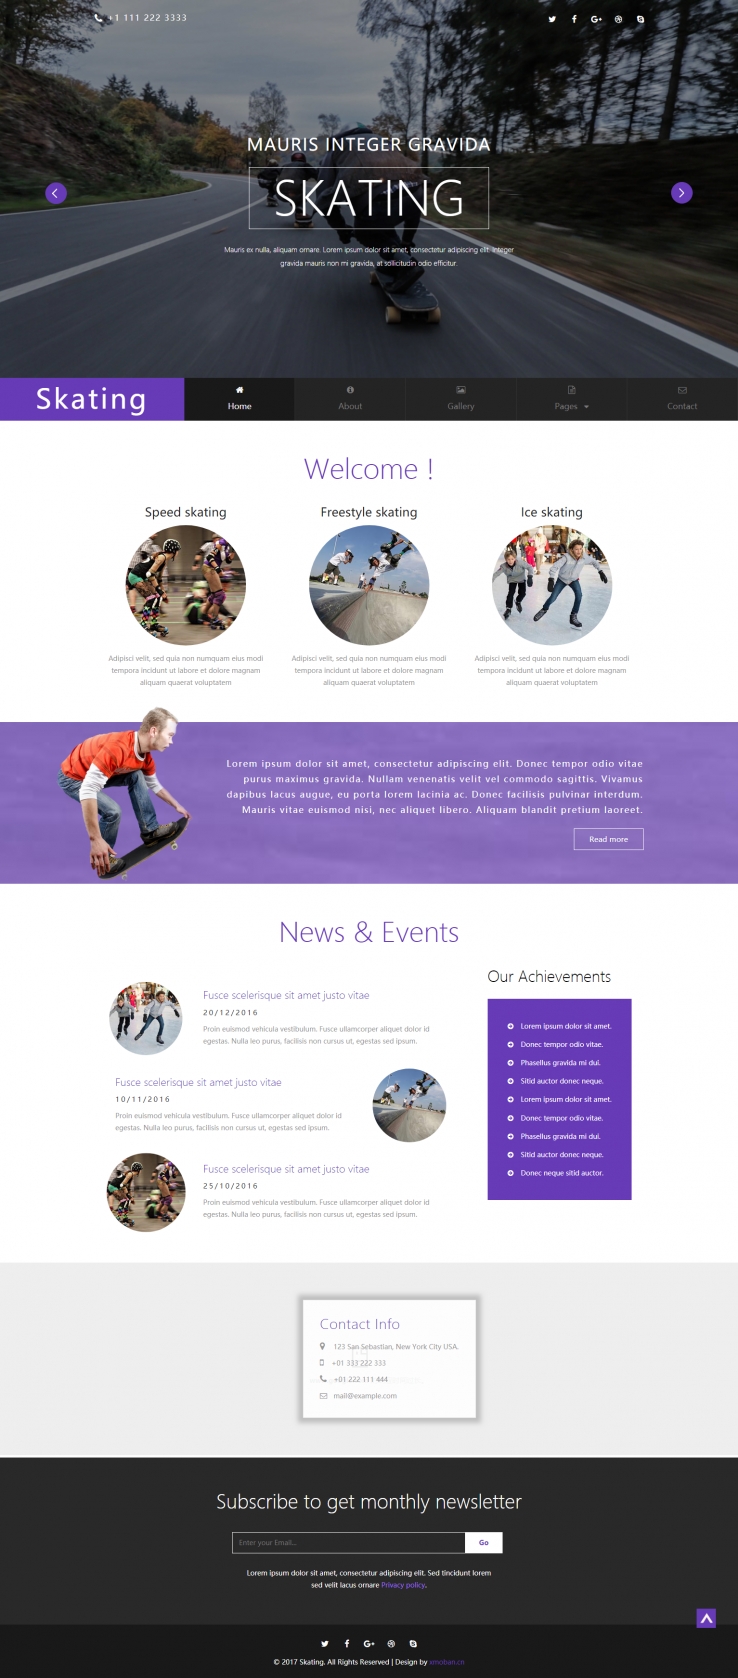 紫色简洁风格的滑冰运动企业网站源码下载